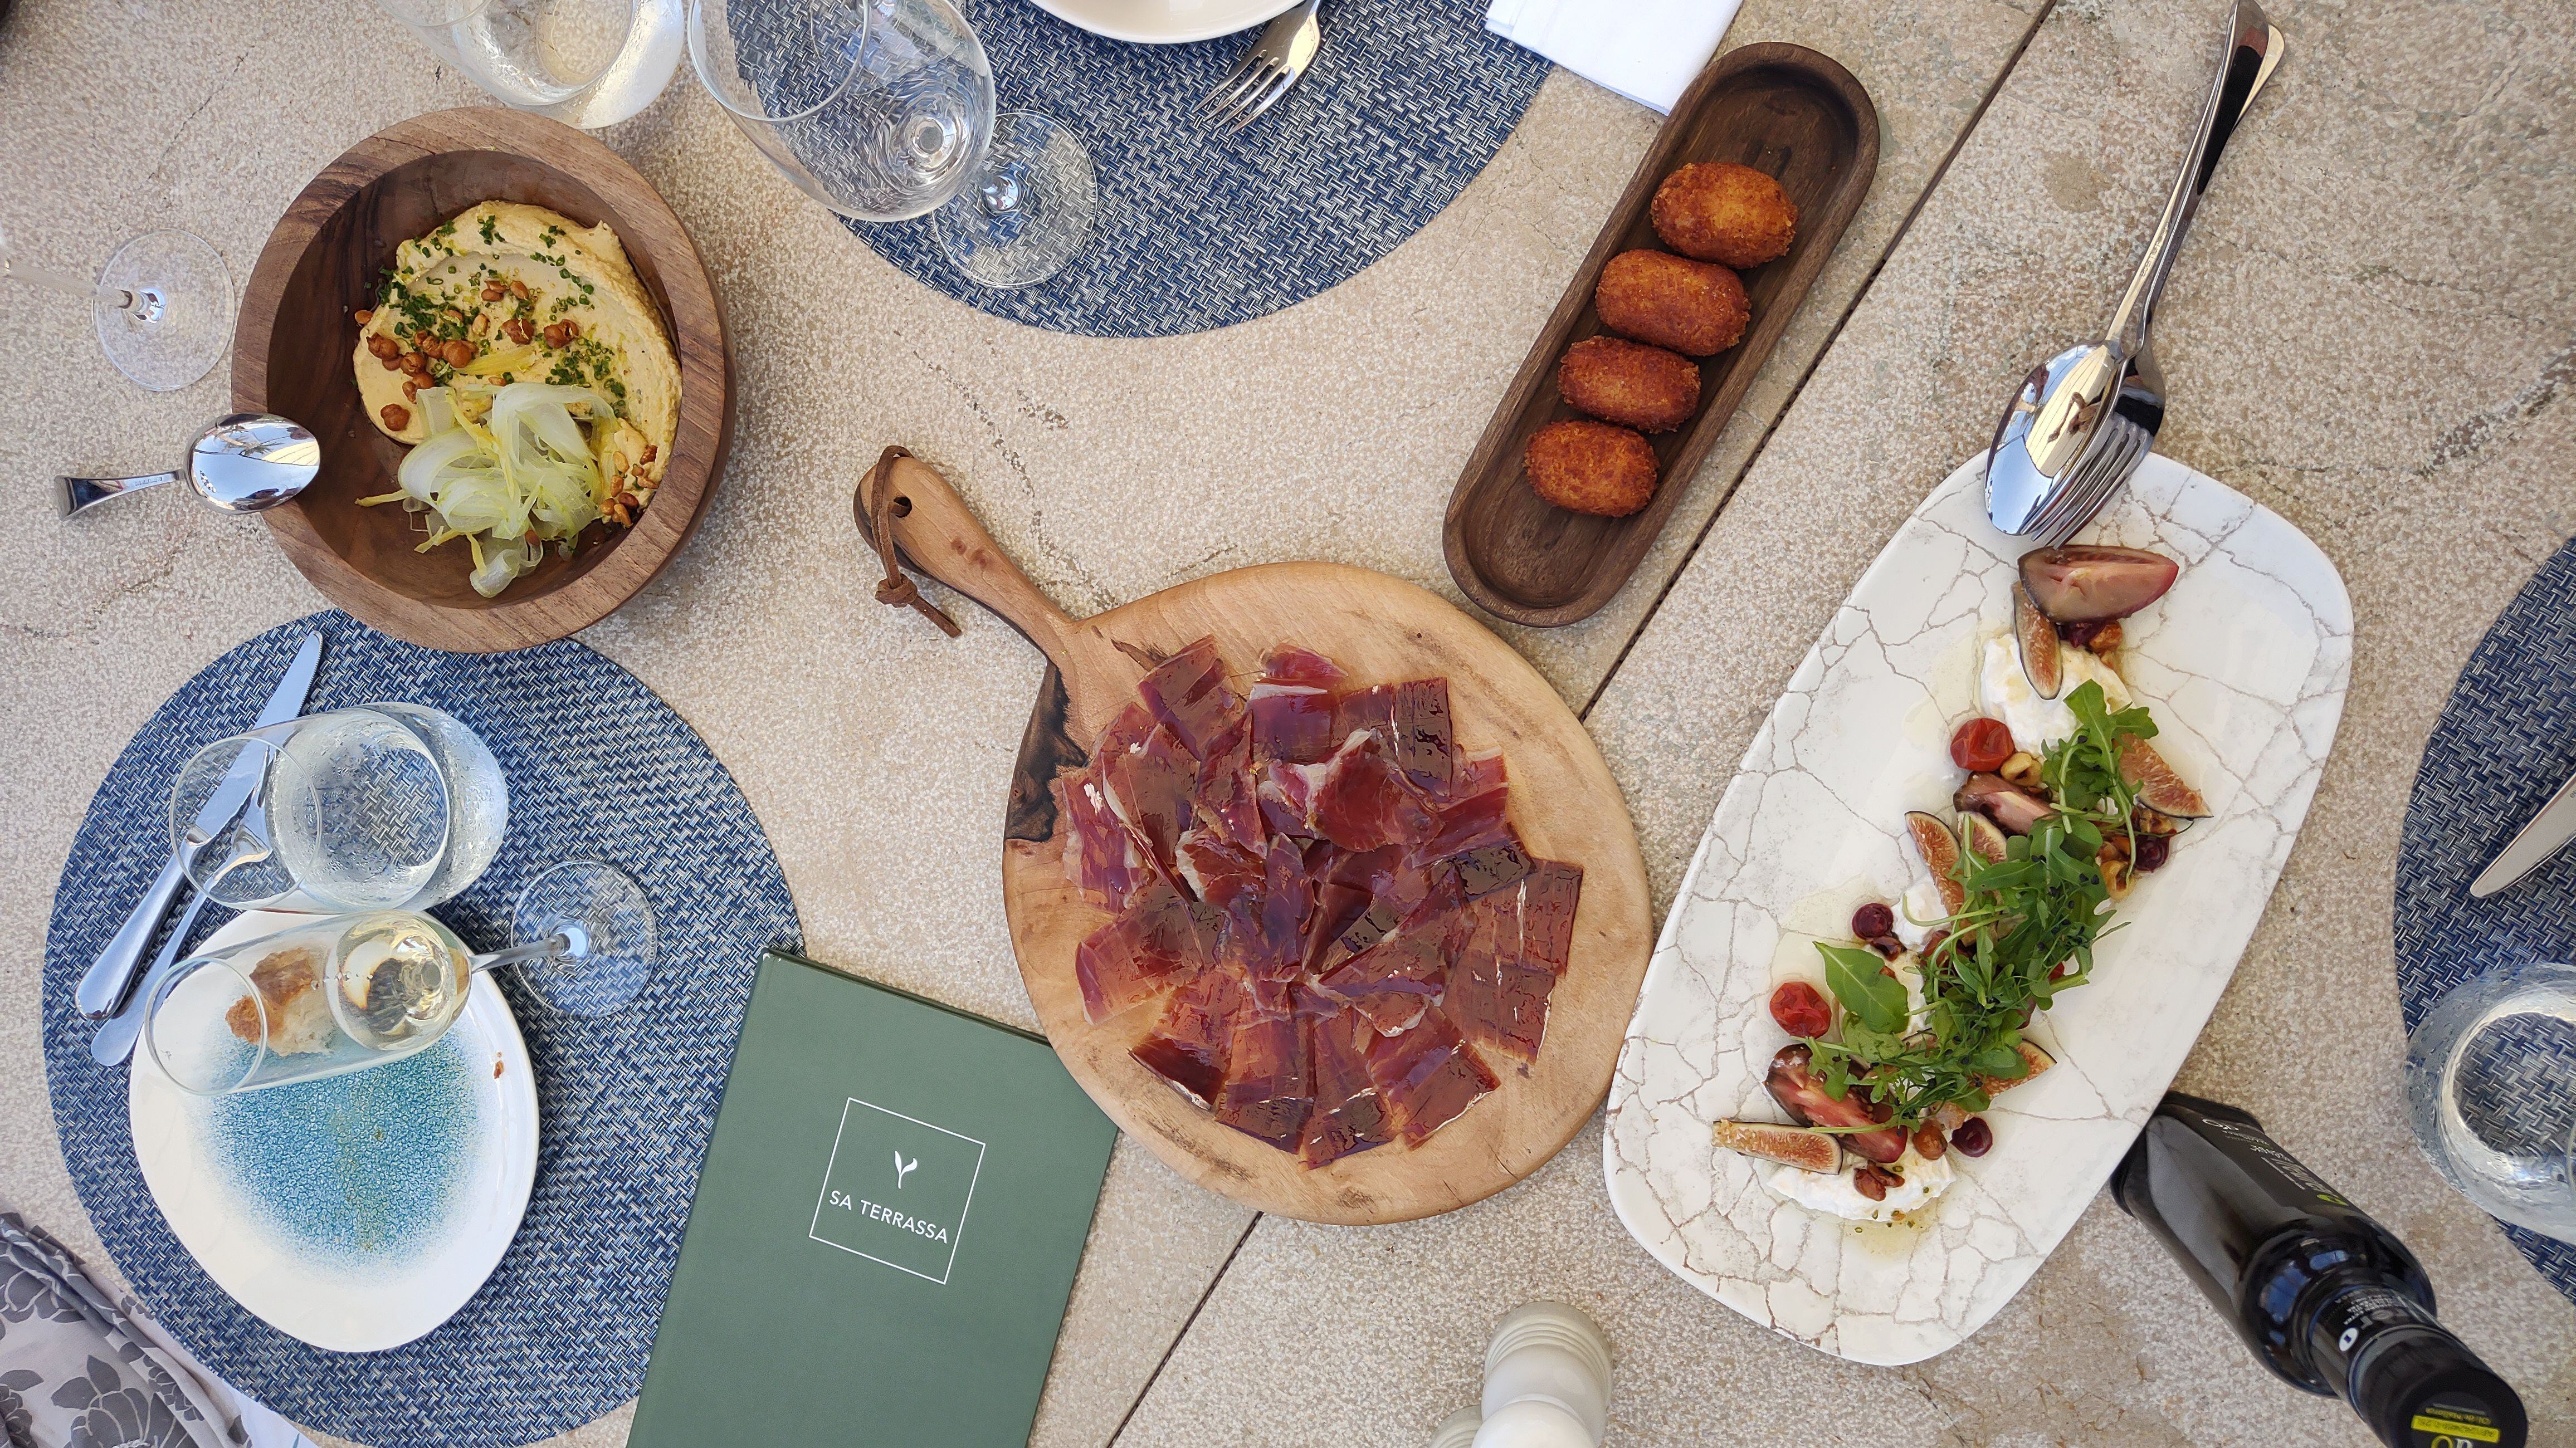 El menú es de inspiración mediterránea y ‘farm to table’, basado en productos locales, frescos y de estación.